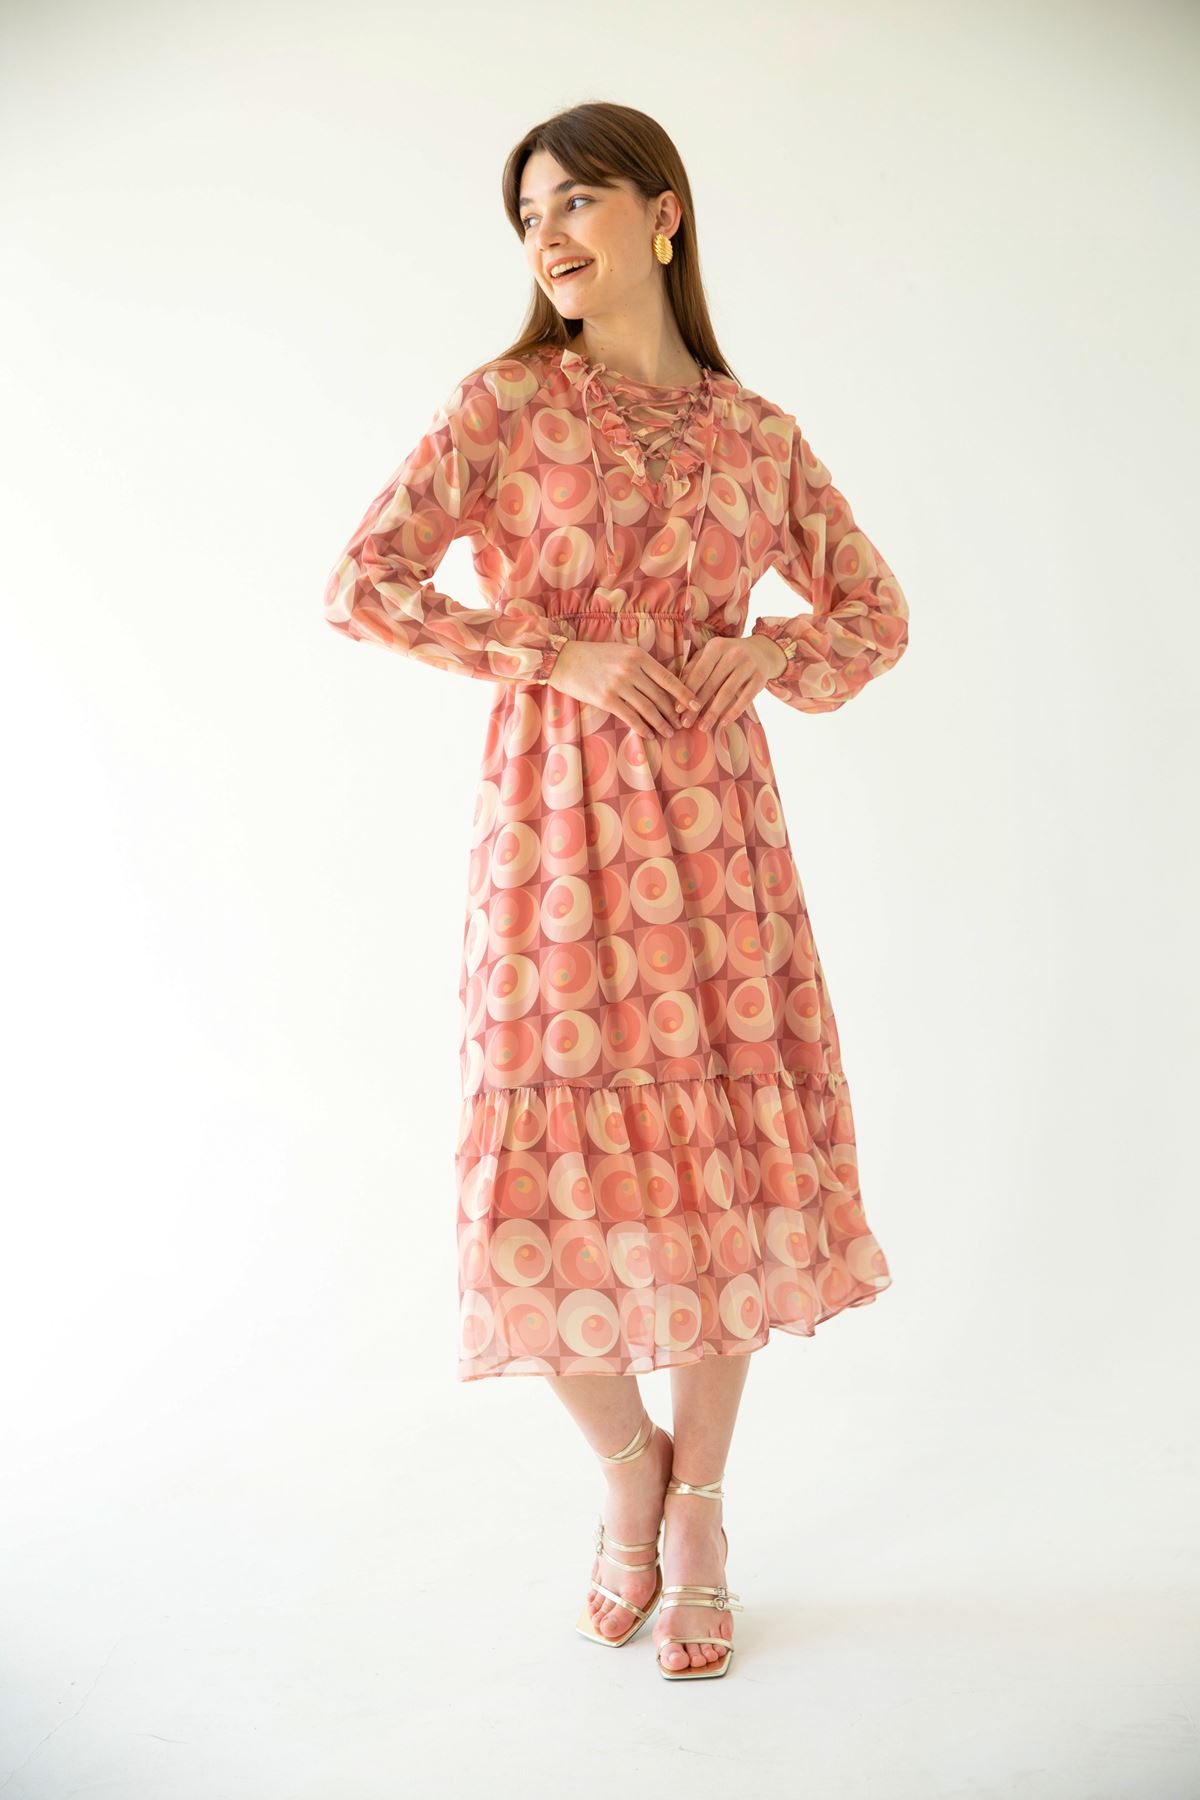 Chiffon Fabric Tied Neck Geometric Pattern Women Dress - Pink